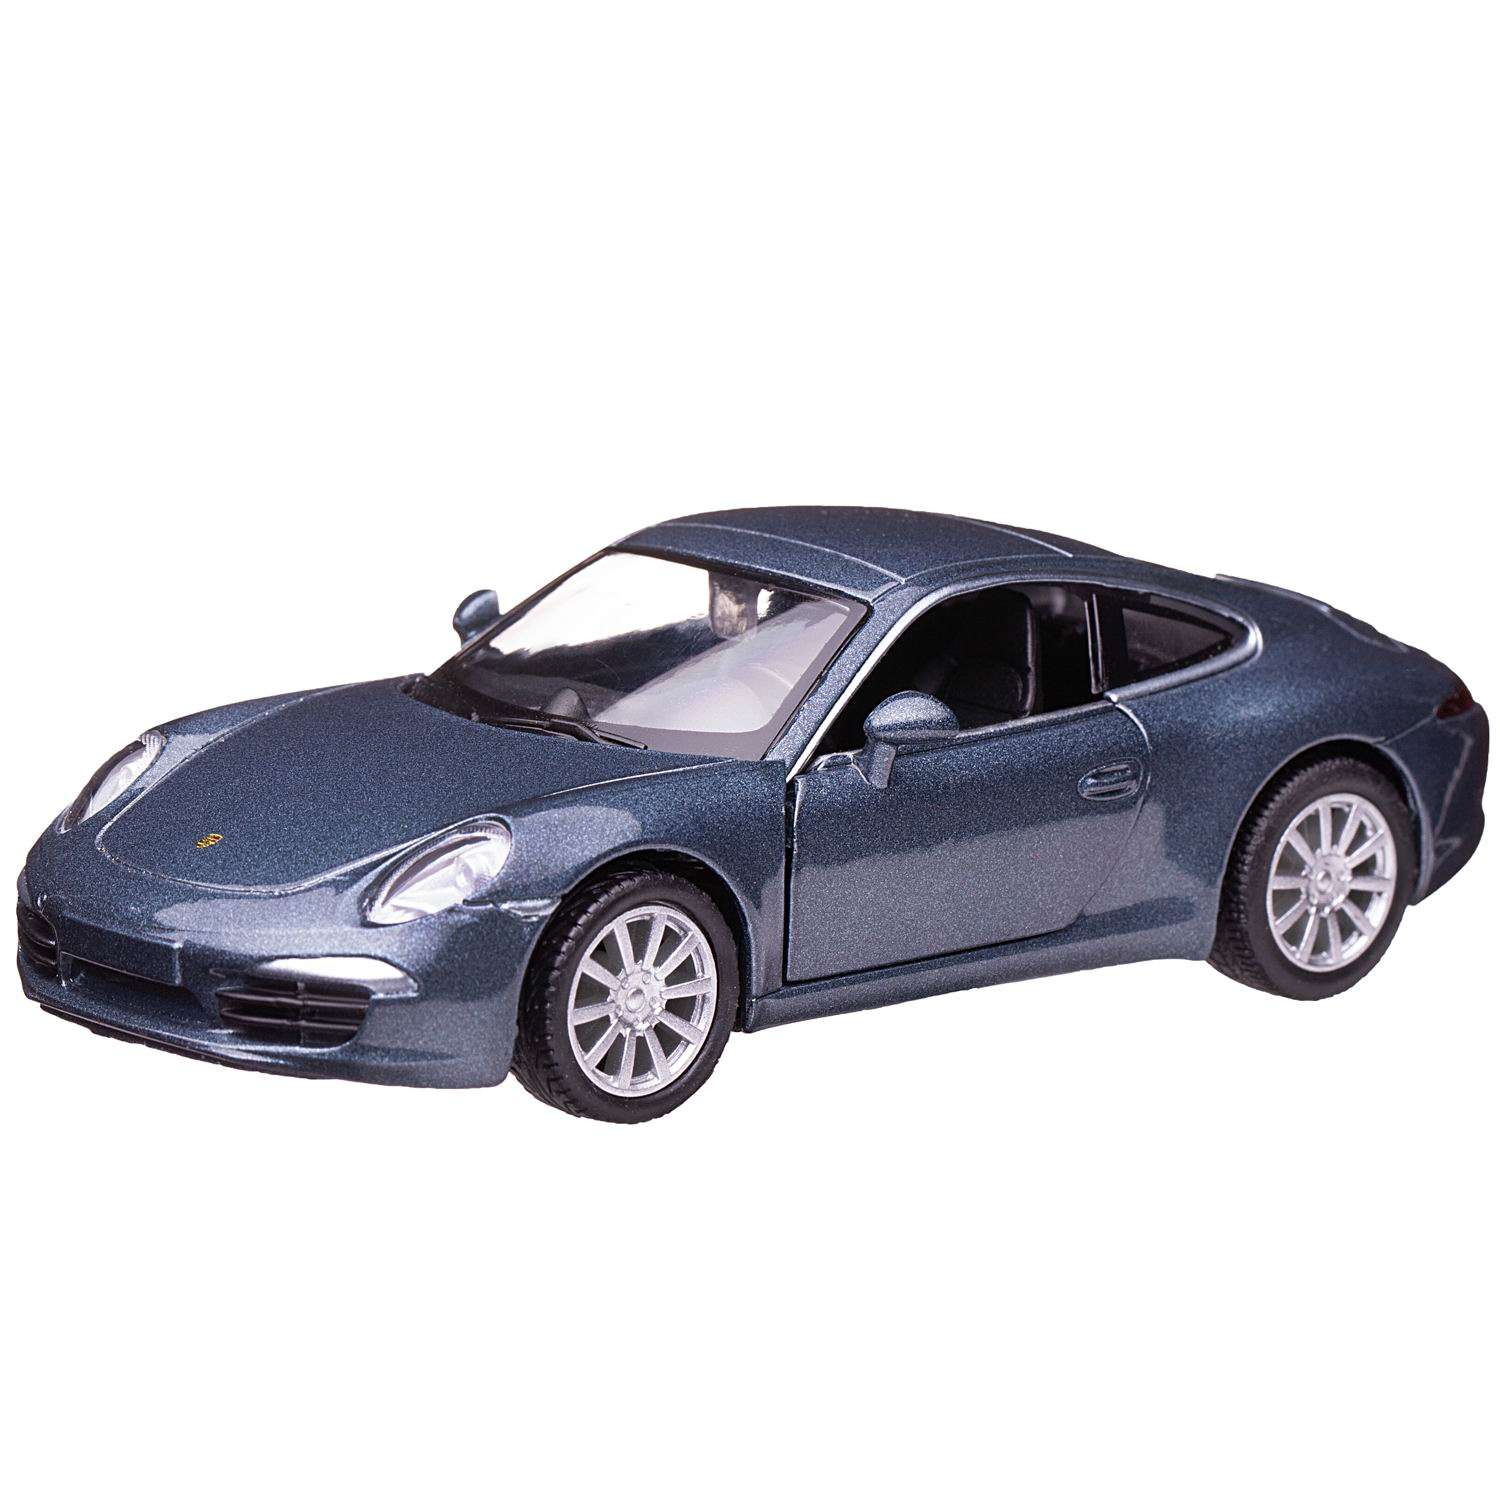 Машина металлическая Uni-Fortune Porsche 911 Carrea S синий металлик цвет двери открываются 554010-BLU - фото 1